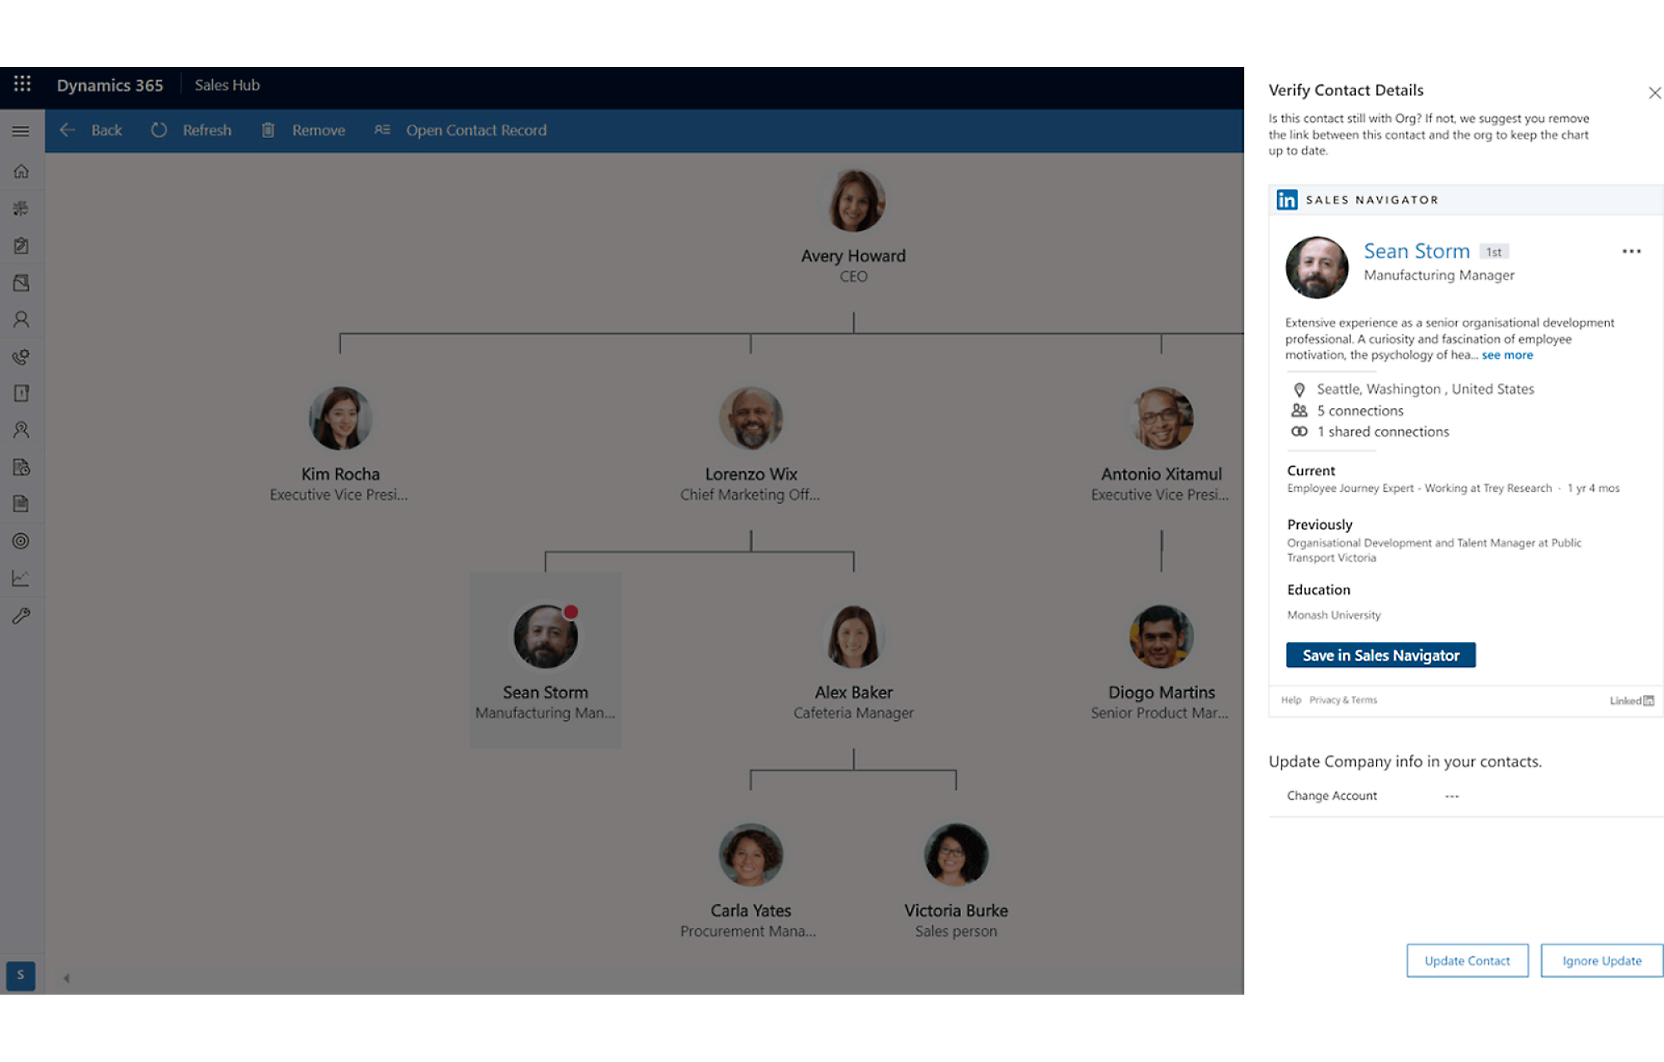 Capture d’écran d’une interface Dynamics 365 montrant un organigramme et un profil détaillé d’un employé nommé Bash Storm